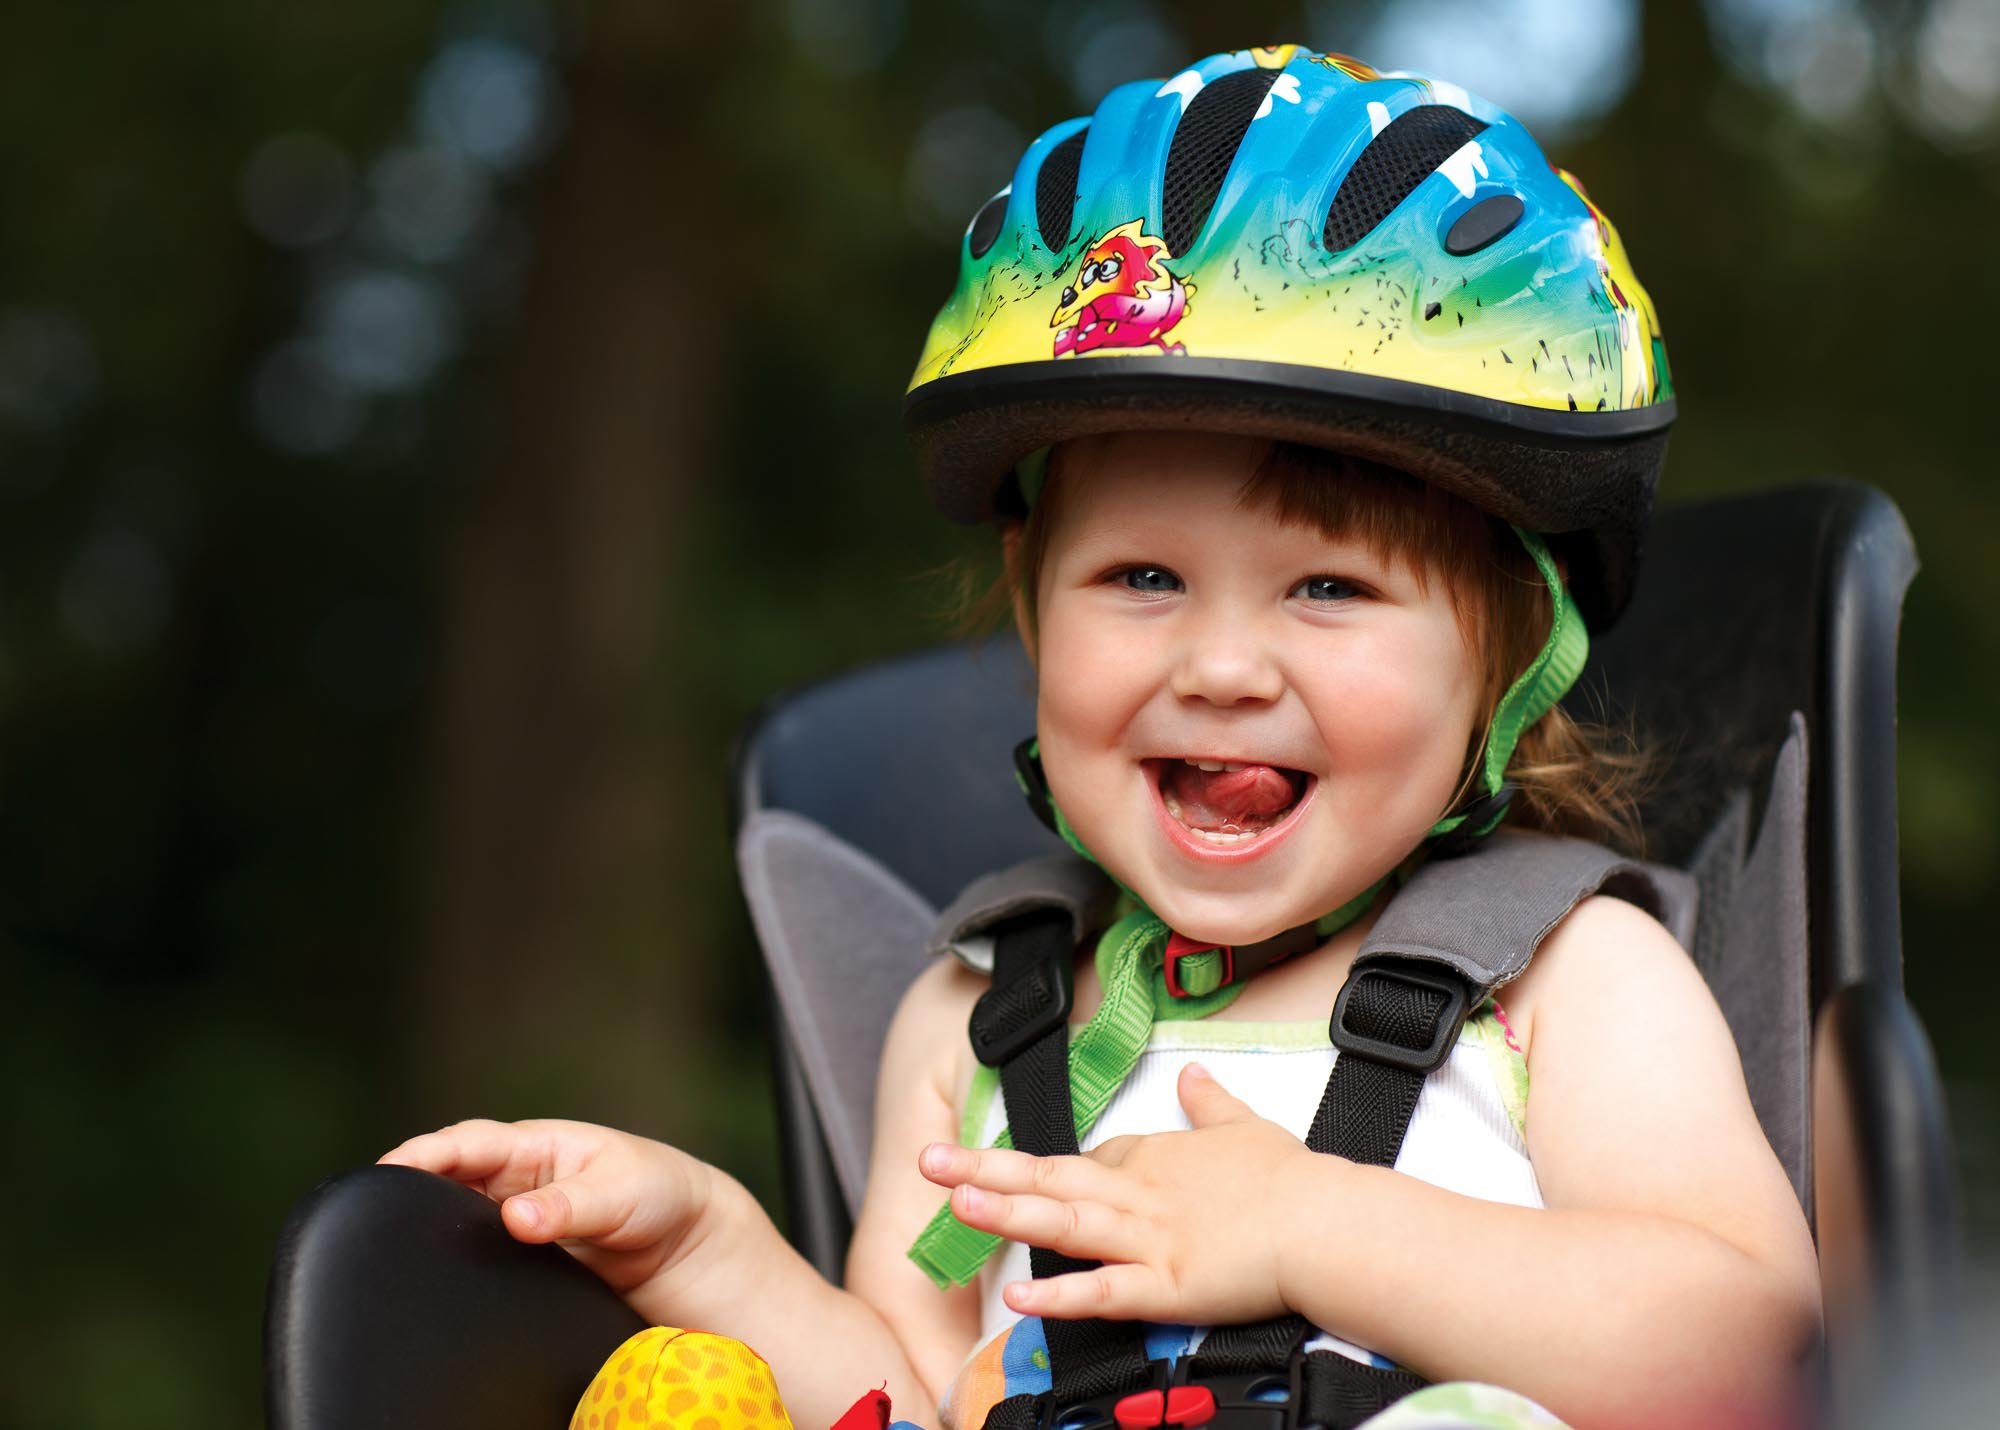 Usmívající se děvčátko v cyklosedačce s přilbou